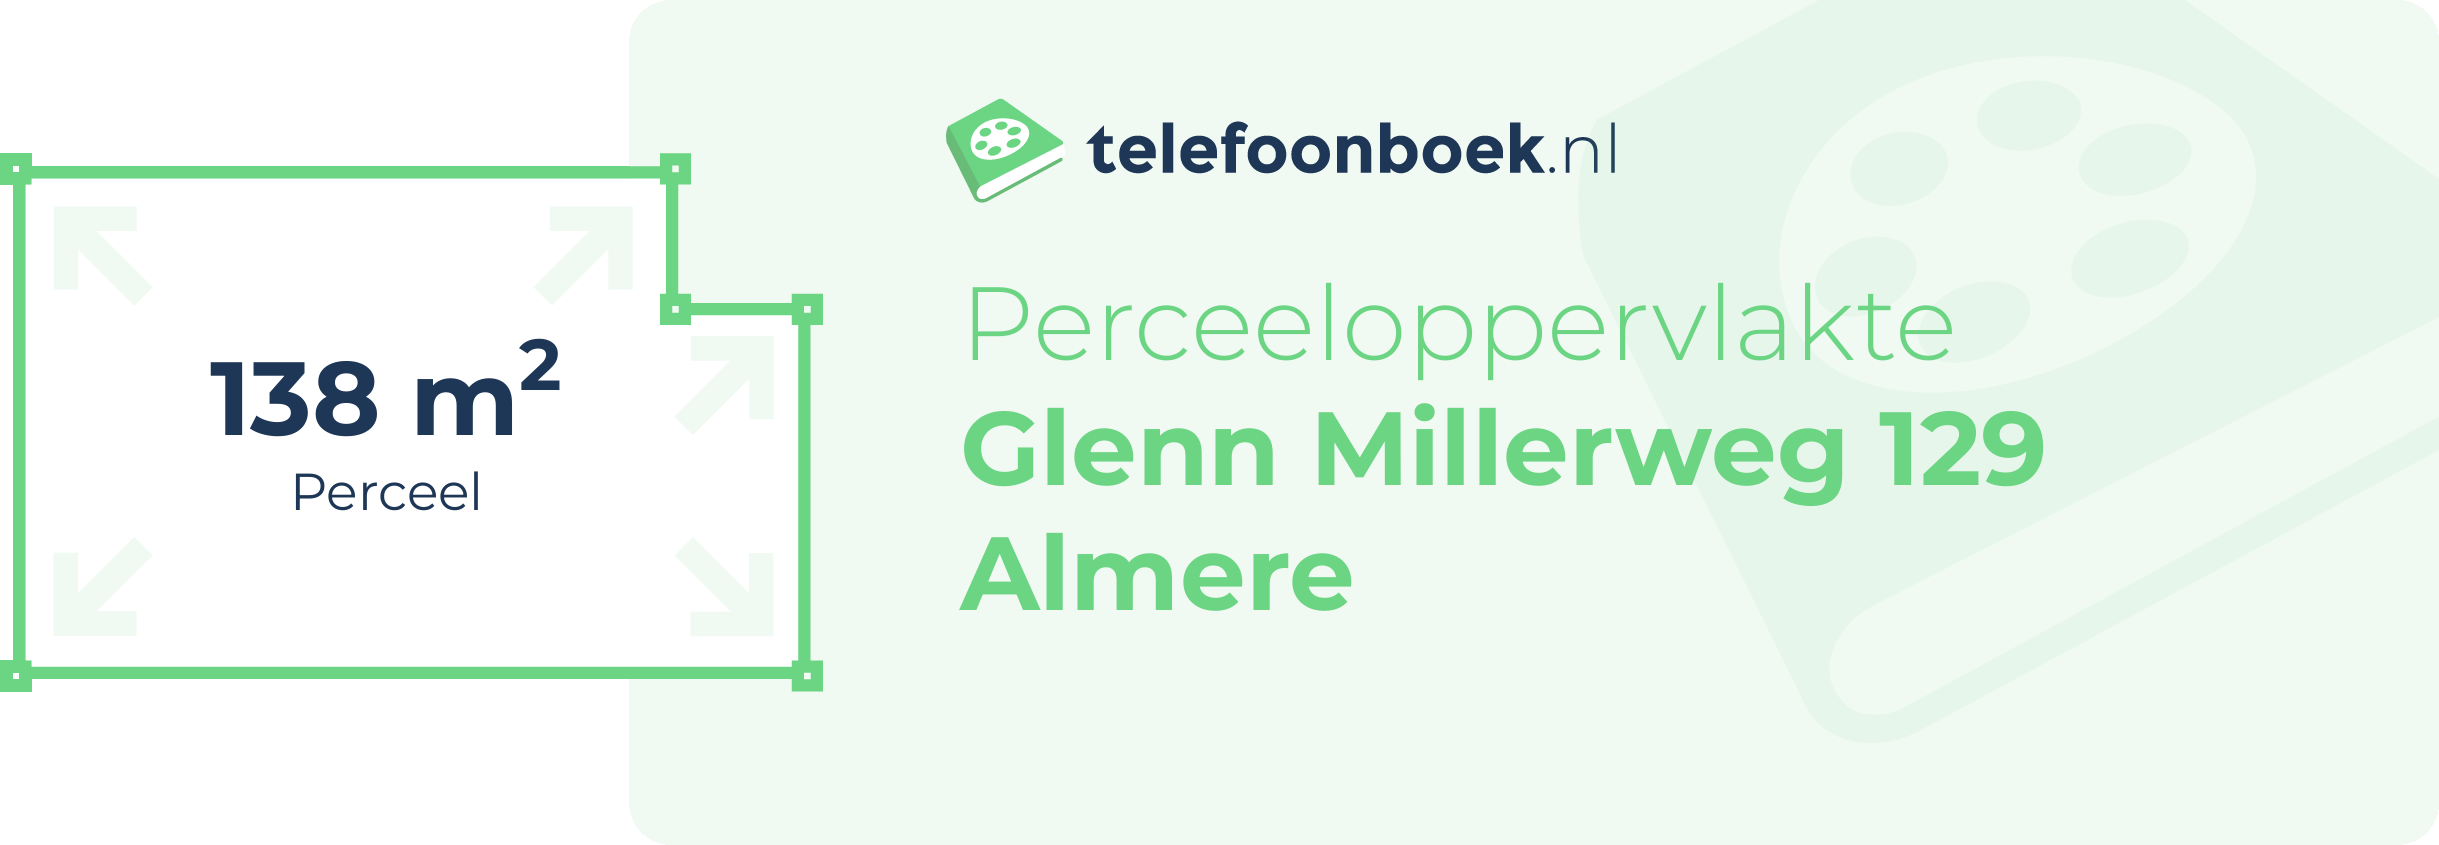 Perceeloppervlakte Glenn Millerweg 129 Almere